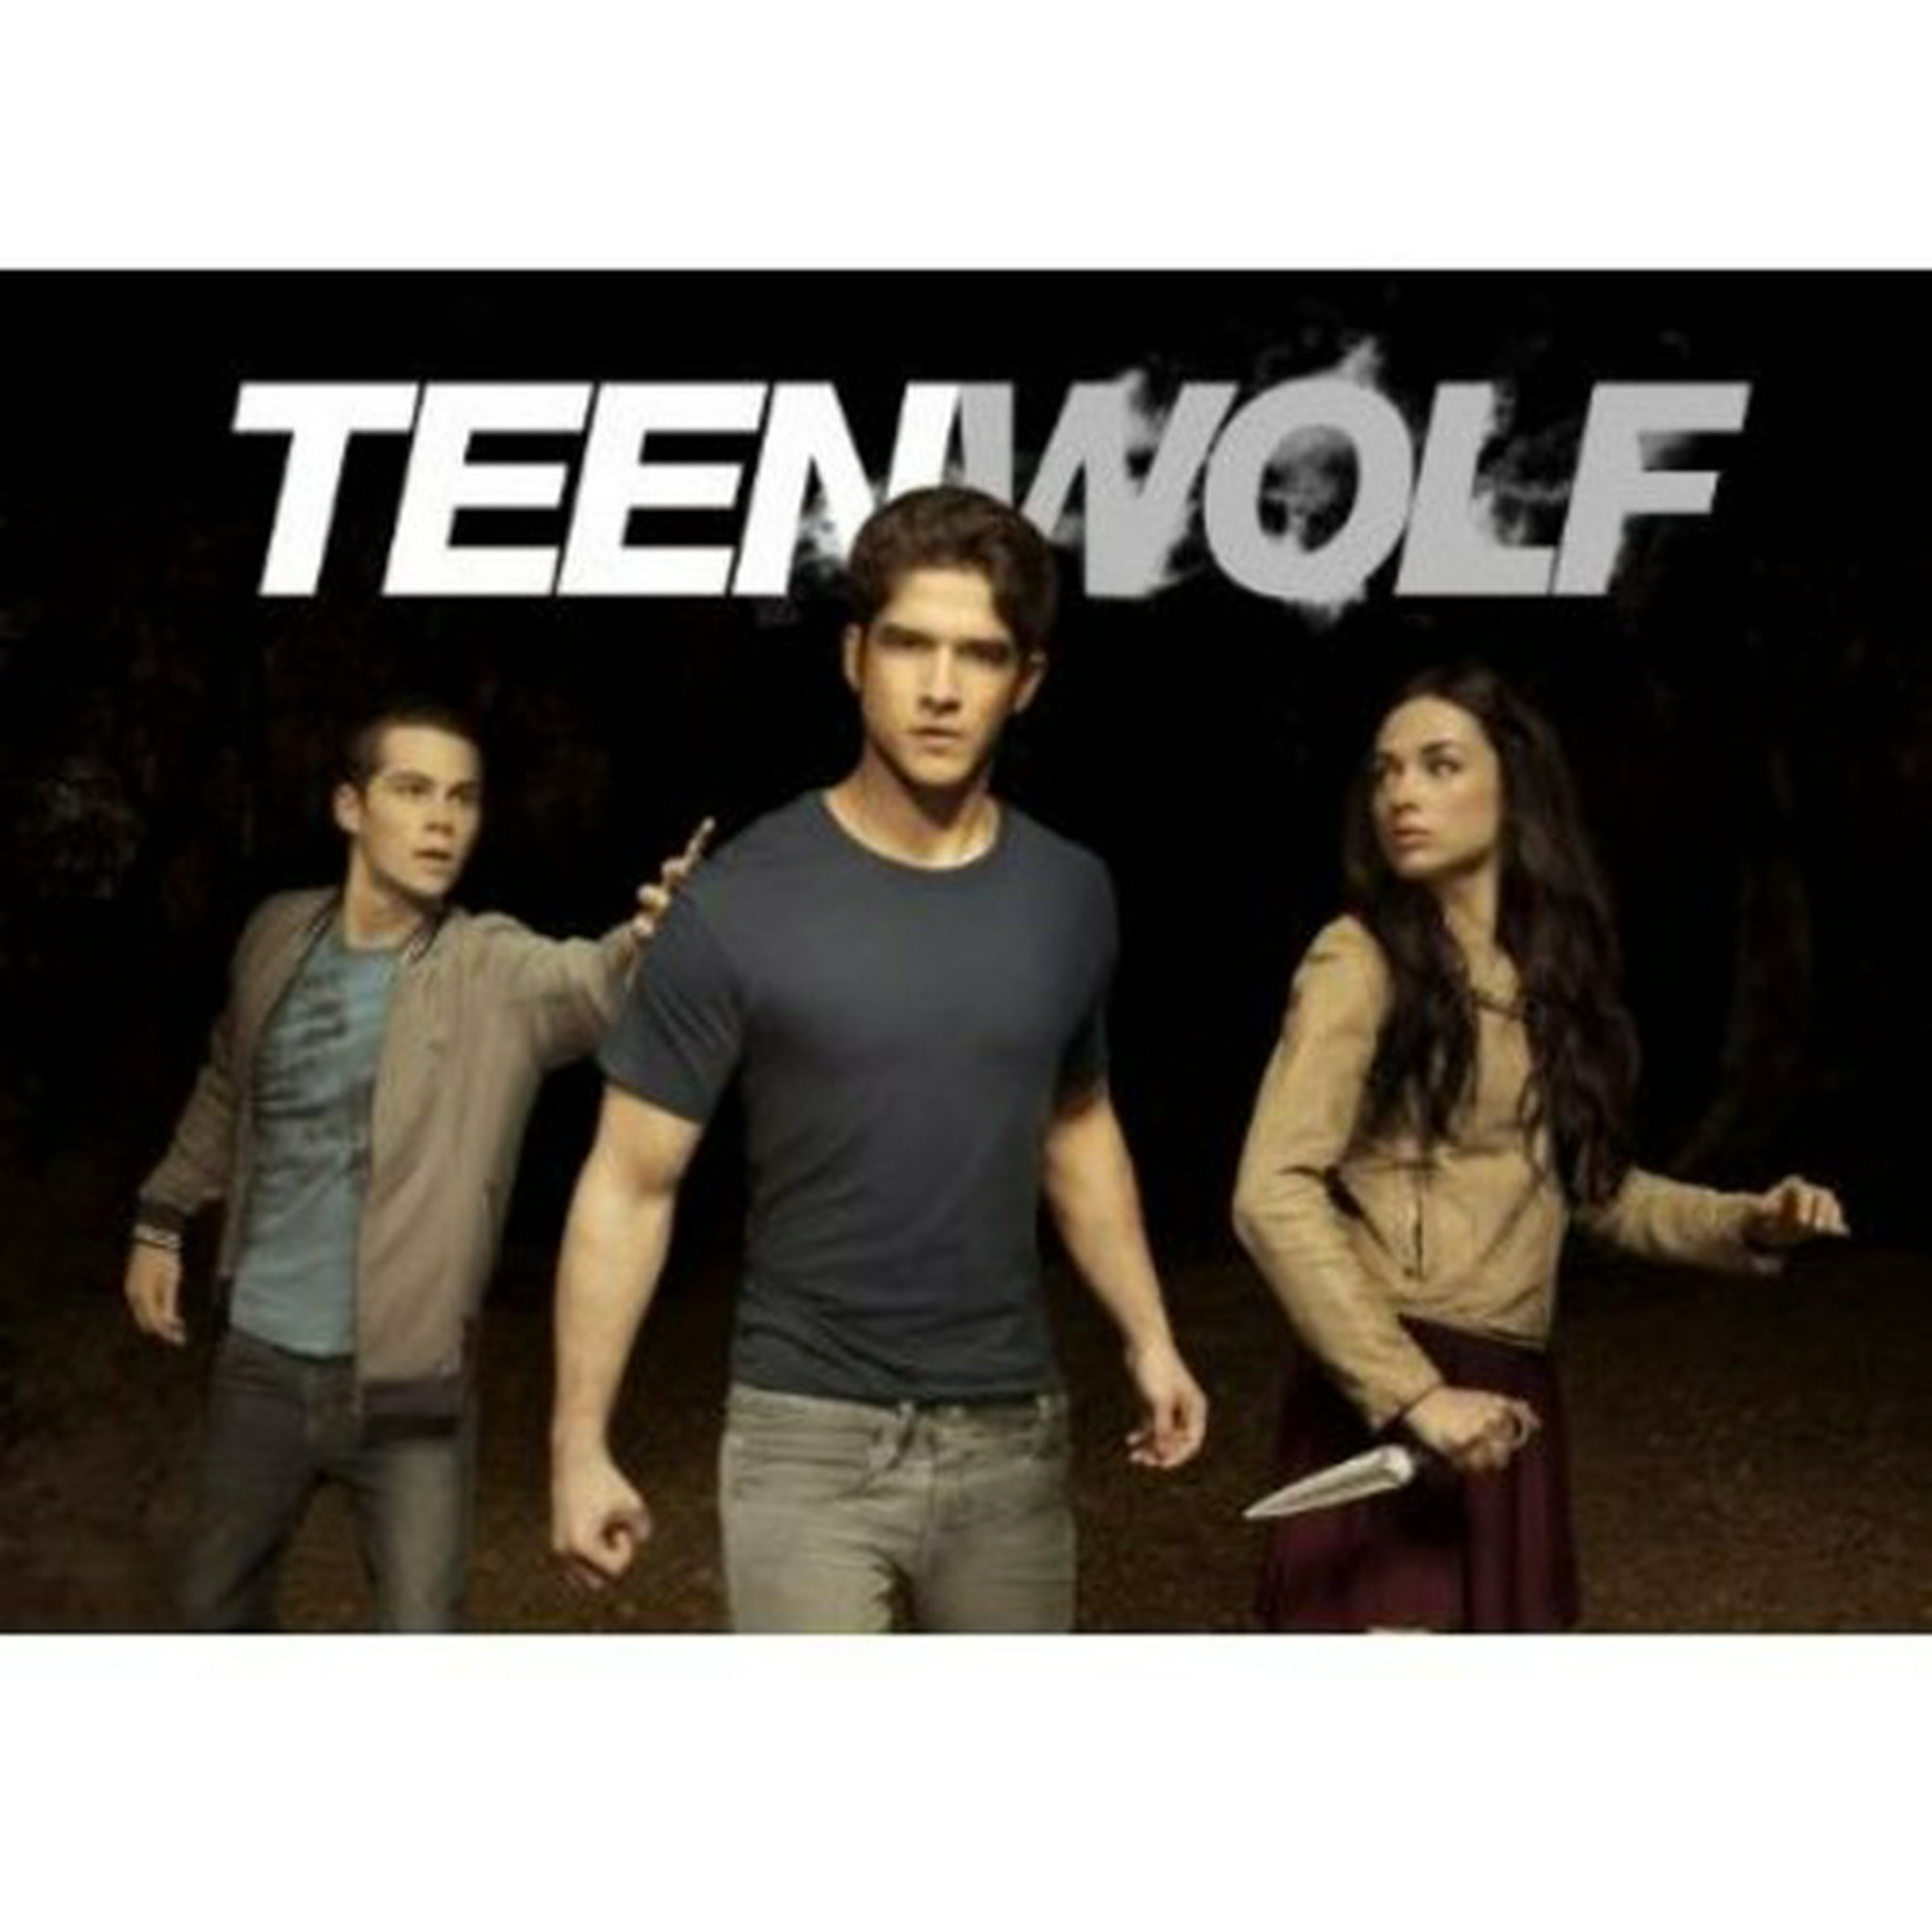 Wolf season 2 teen 'Teen Wolf'